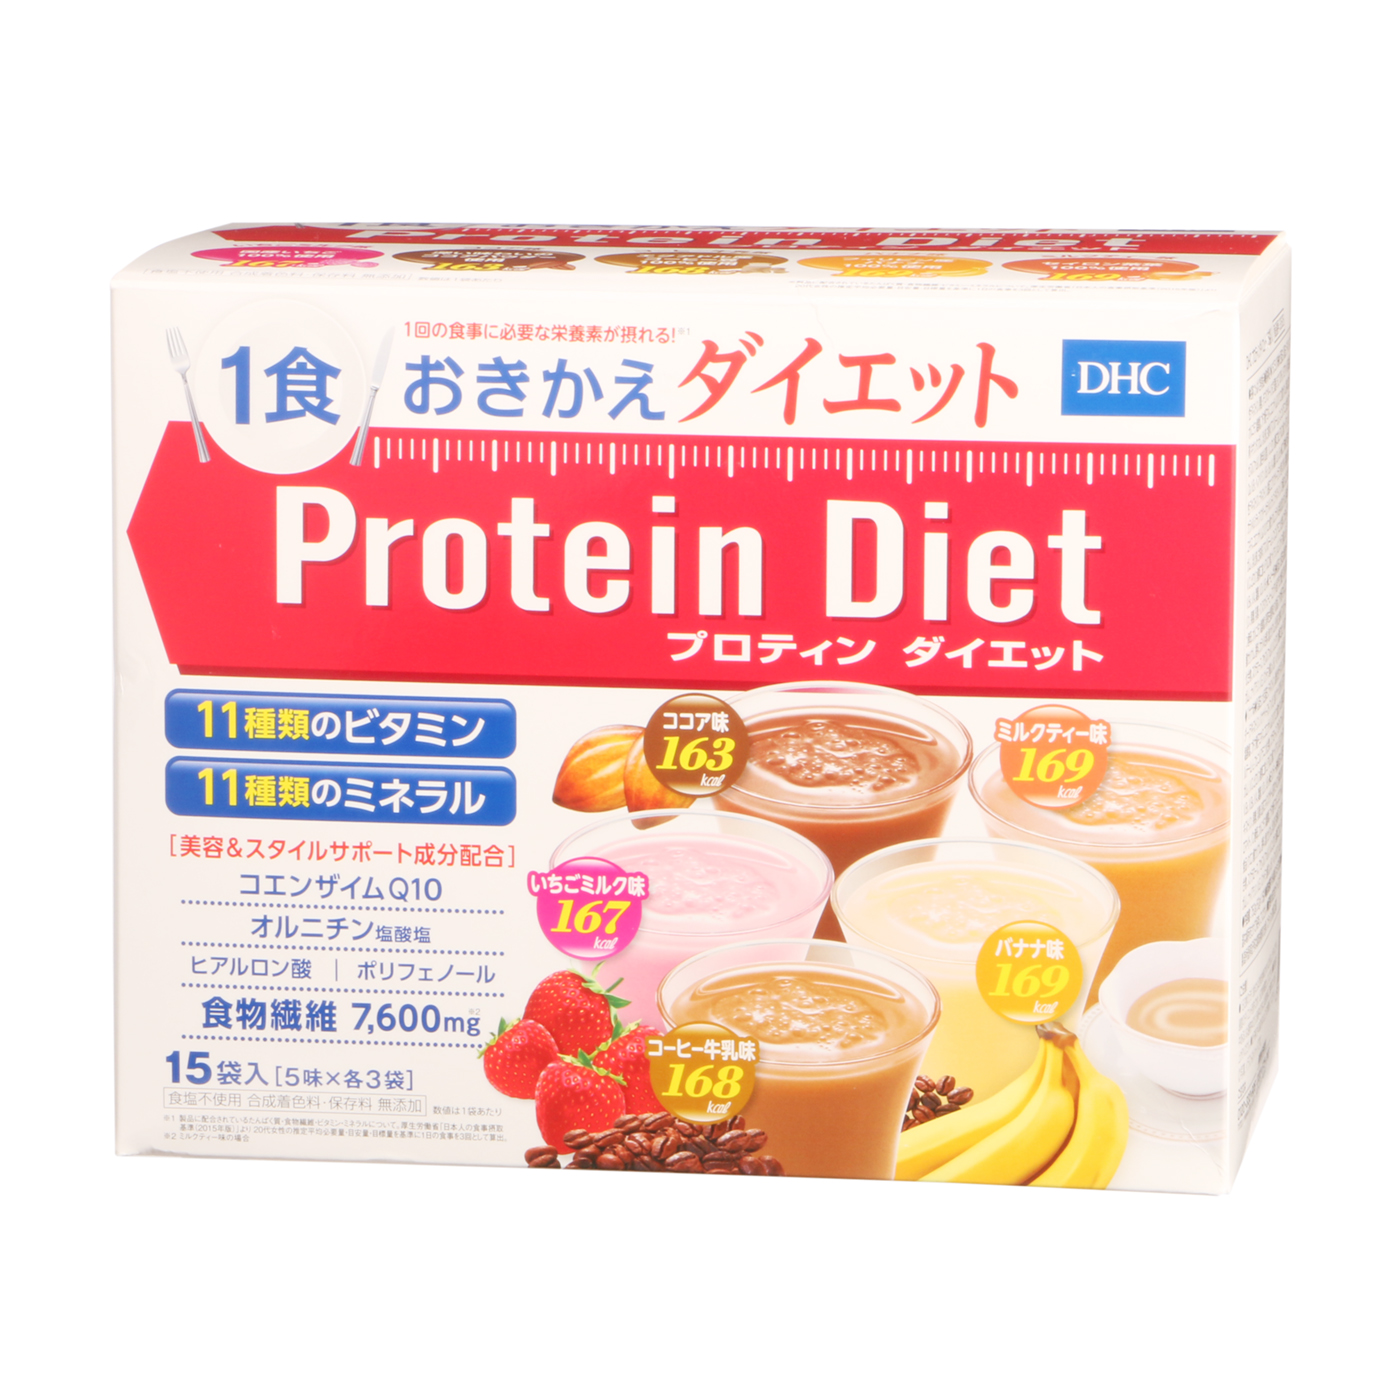 ダイエットバナナ74袋 DHC プロテインダイエット - ダイエット食品